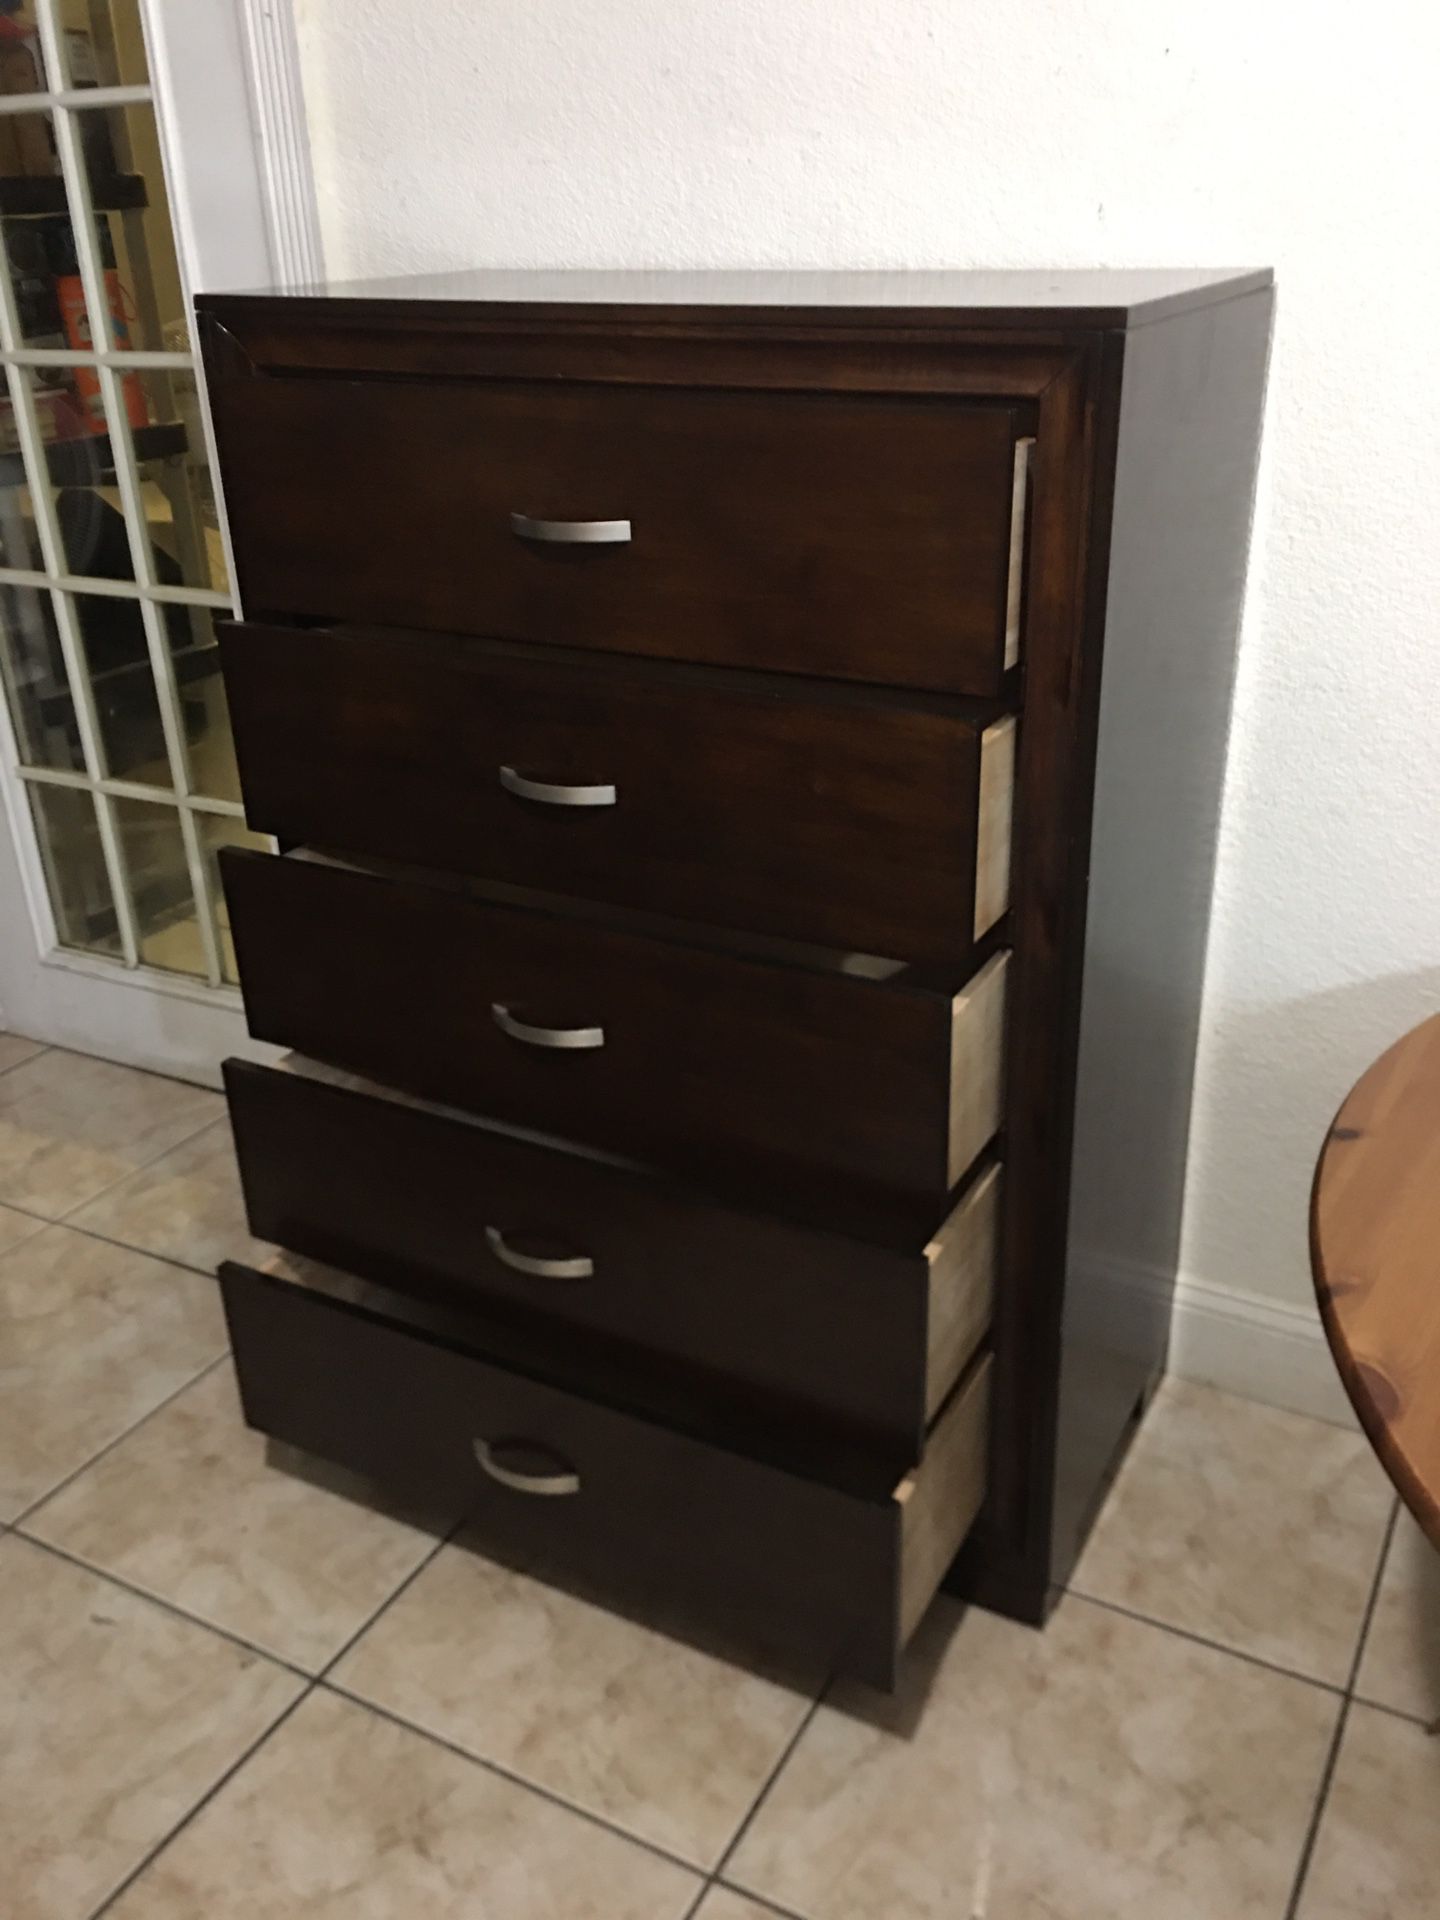 Dark walnut wooden chest with 5-drawers